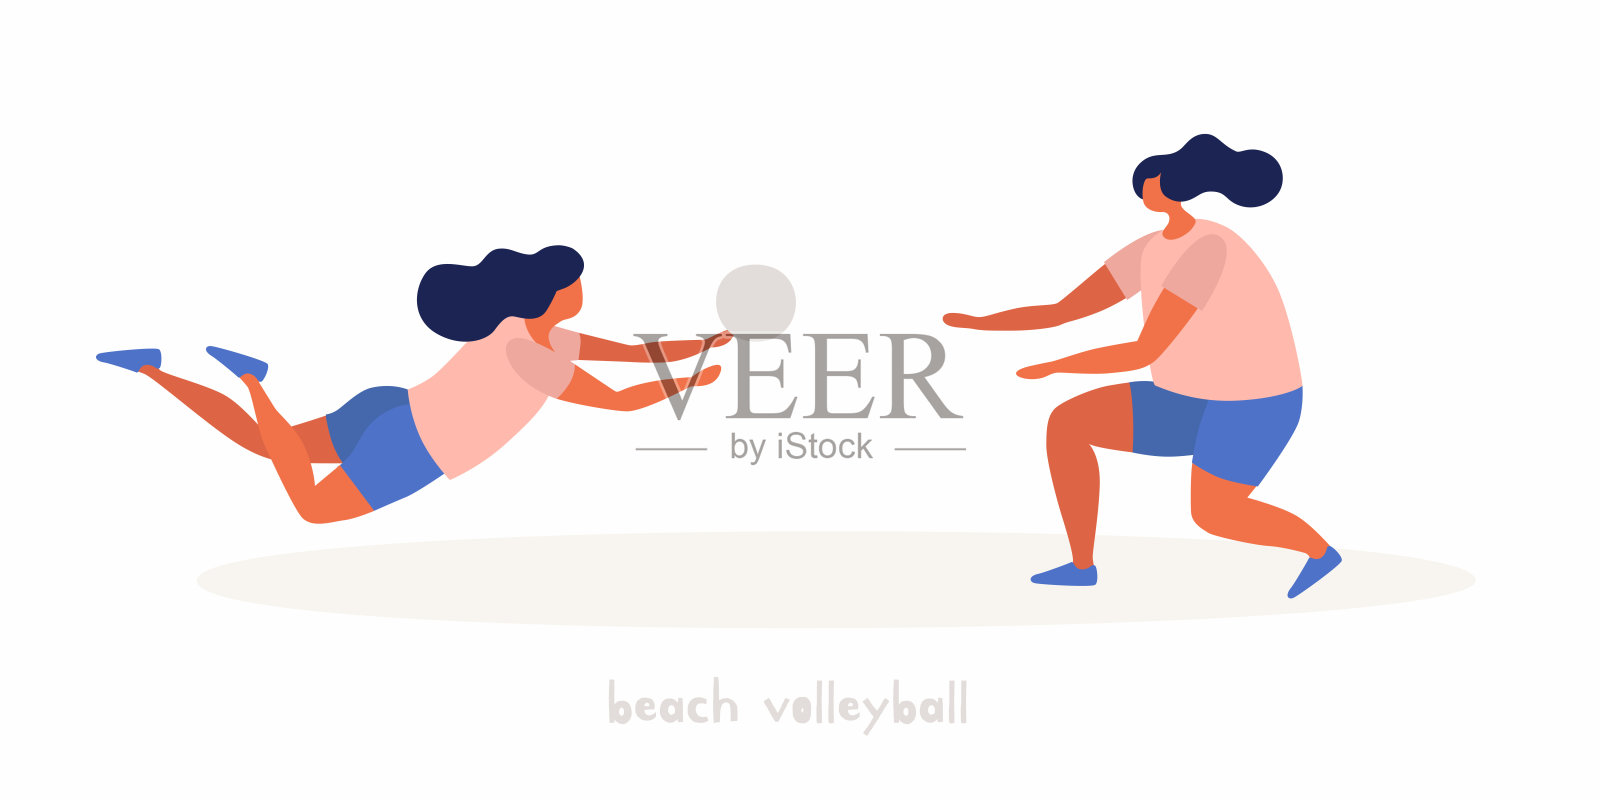 几个晒得黝黑的年轻女孩在玩沙滩排球。插画图片素材